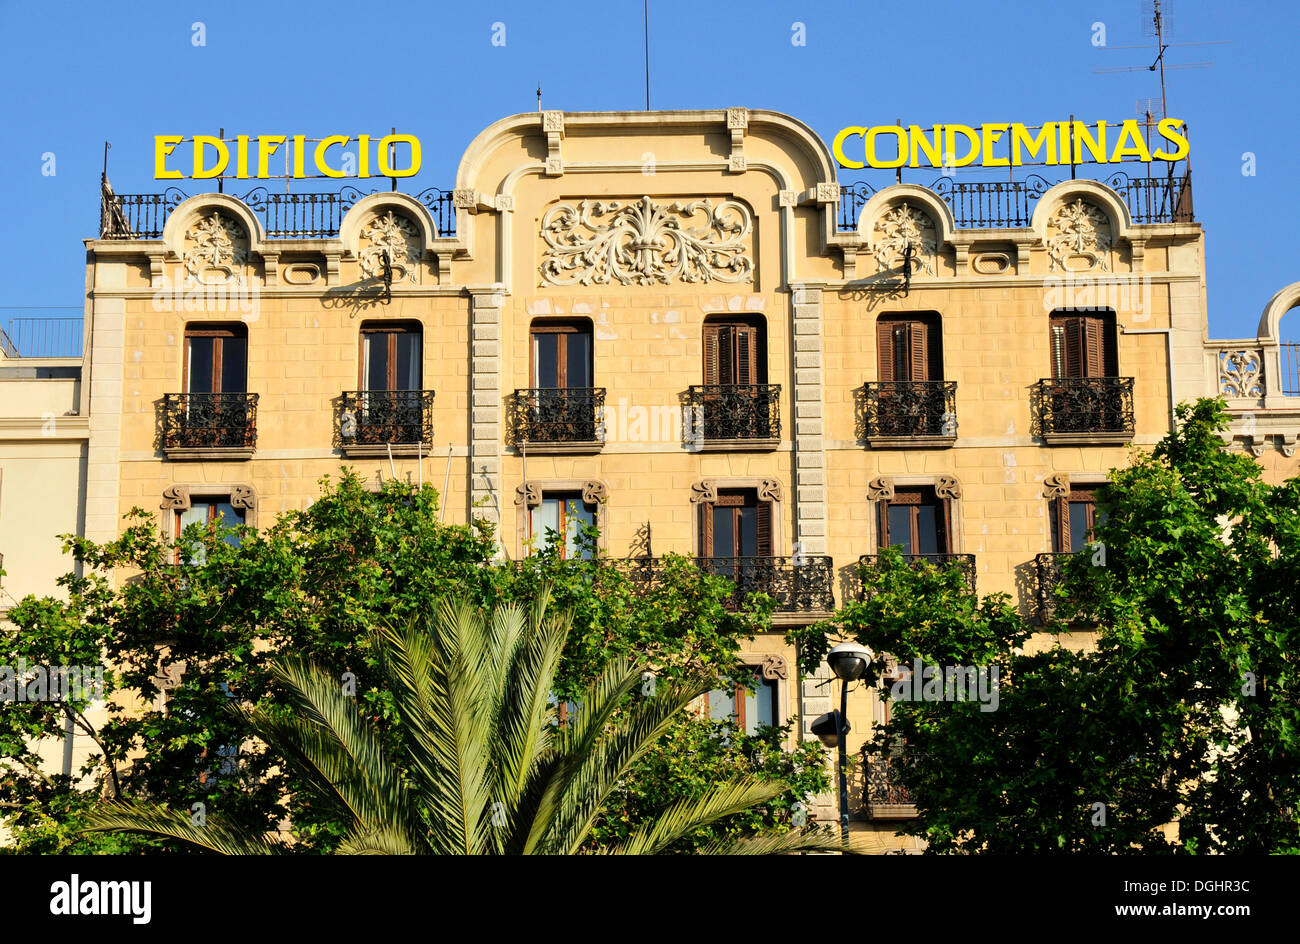 Facade of the Edificio Condedeminas on Paseo de Colón at the Old Port, Barcelona, Spain, Iberian Peninsula, Europe Stock Photo